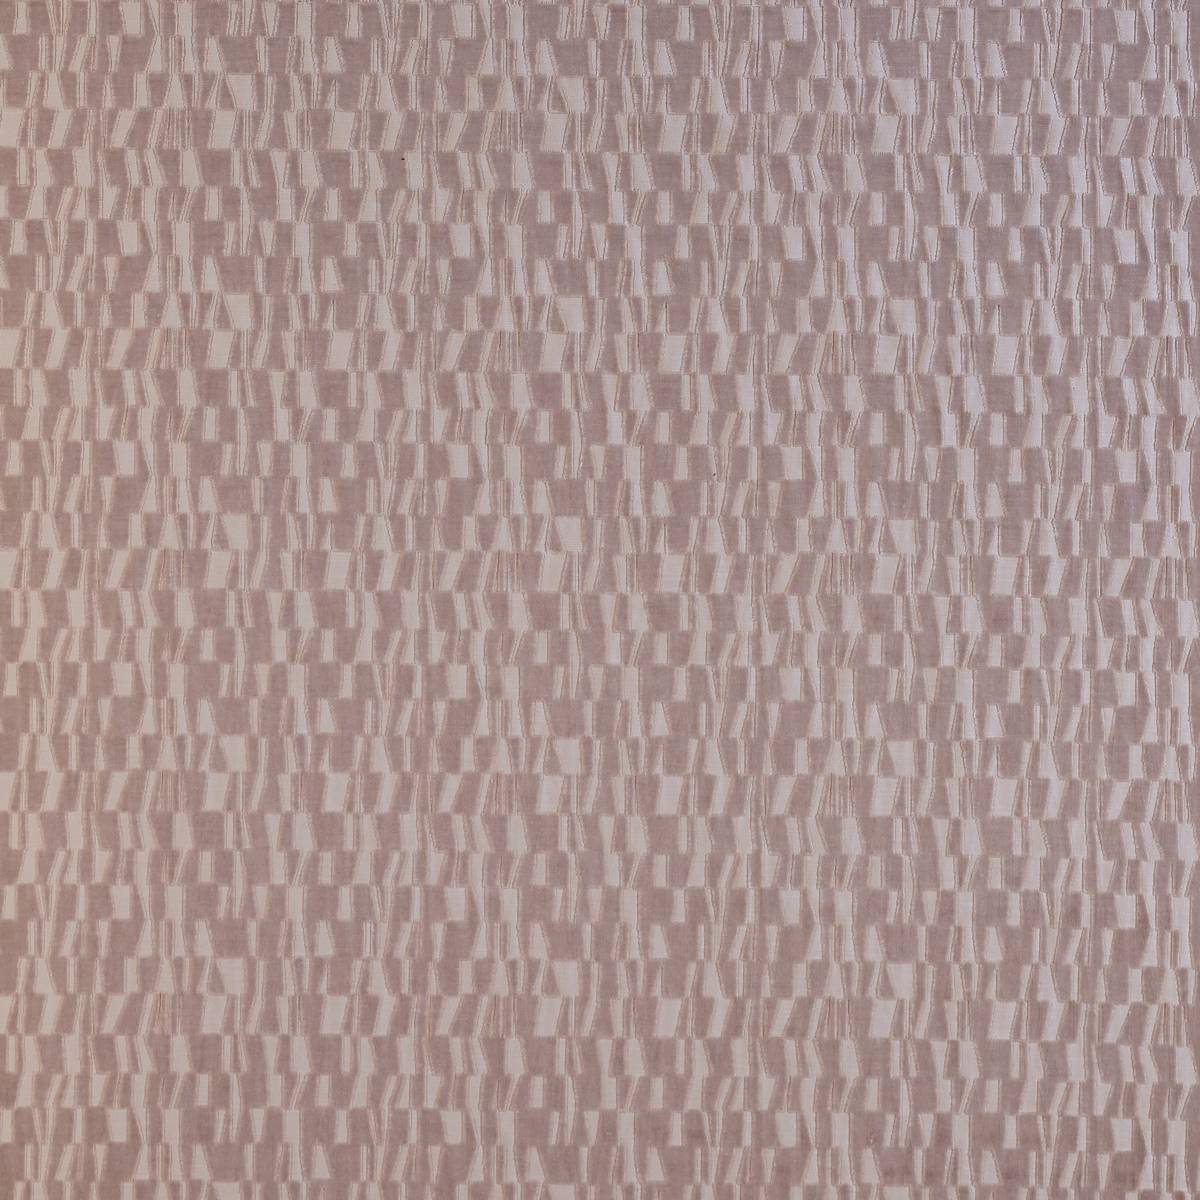 Otaka Blush Fabric by Harlequin